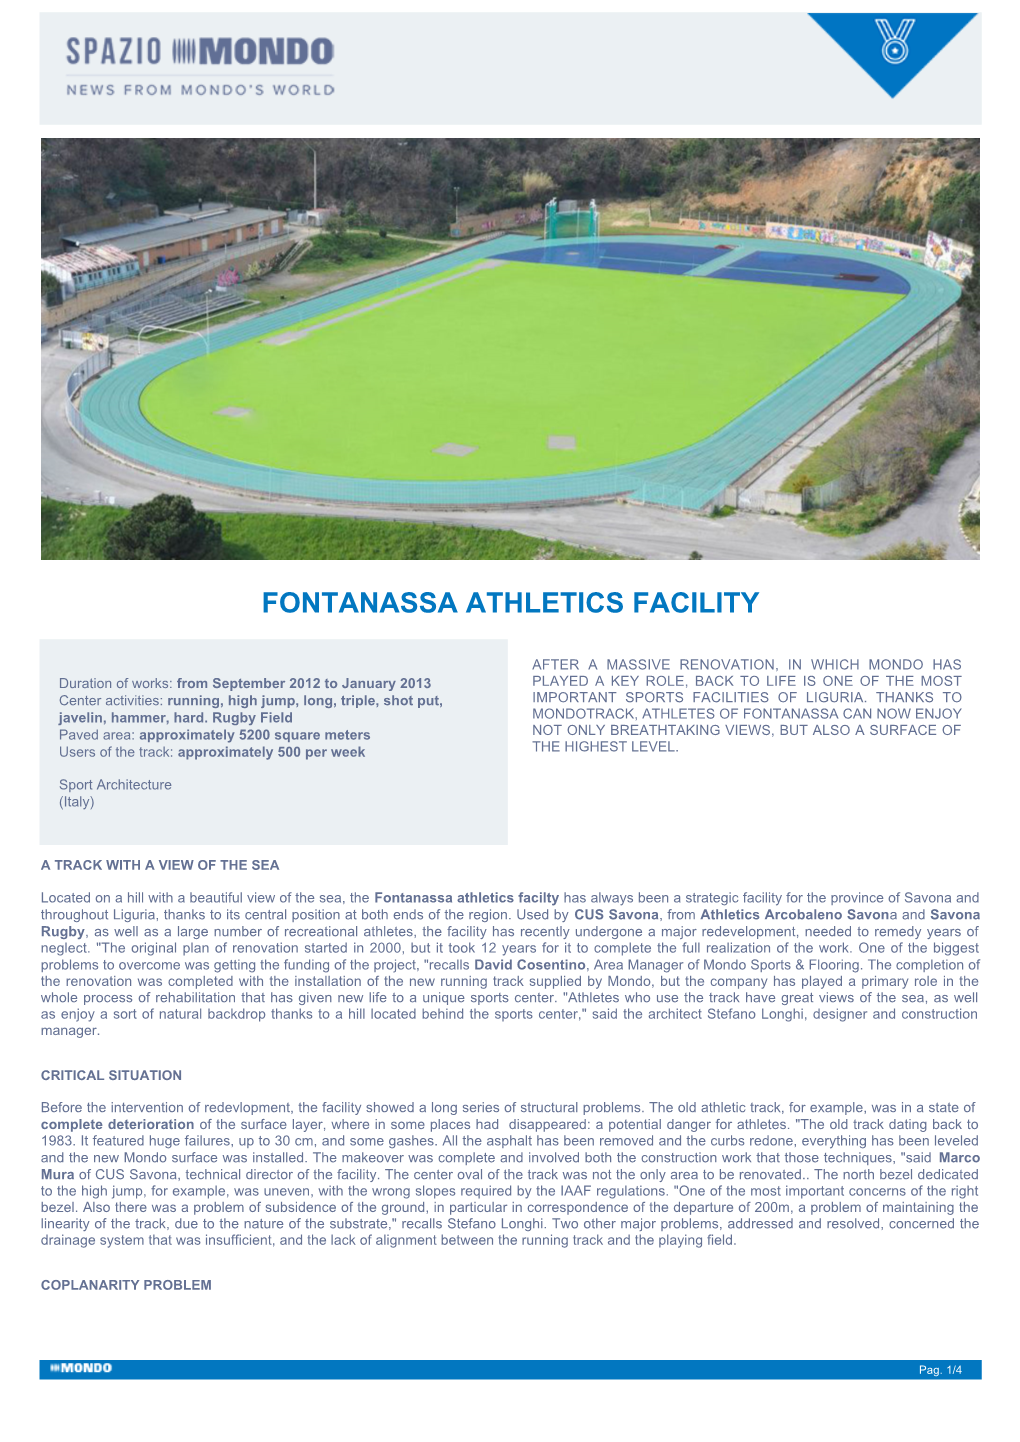 Fontanassa Athletics Facility